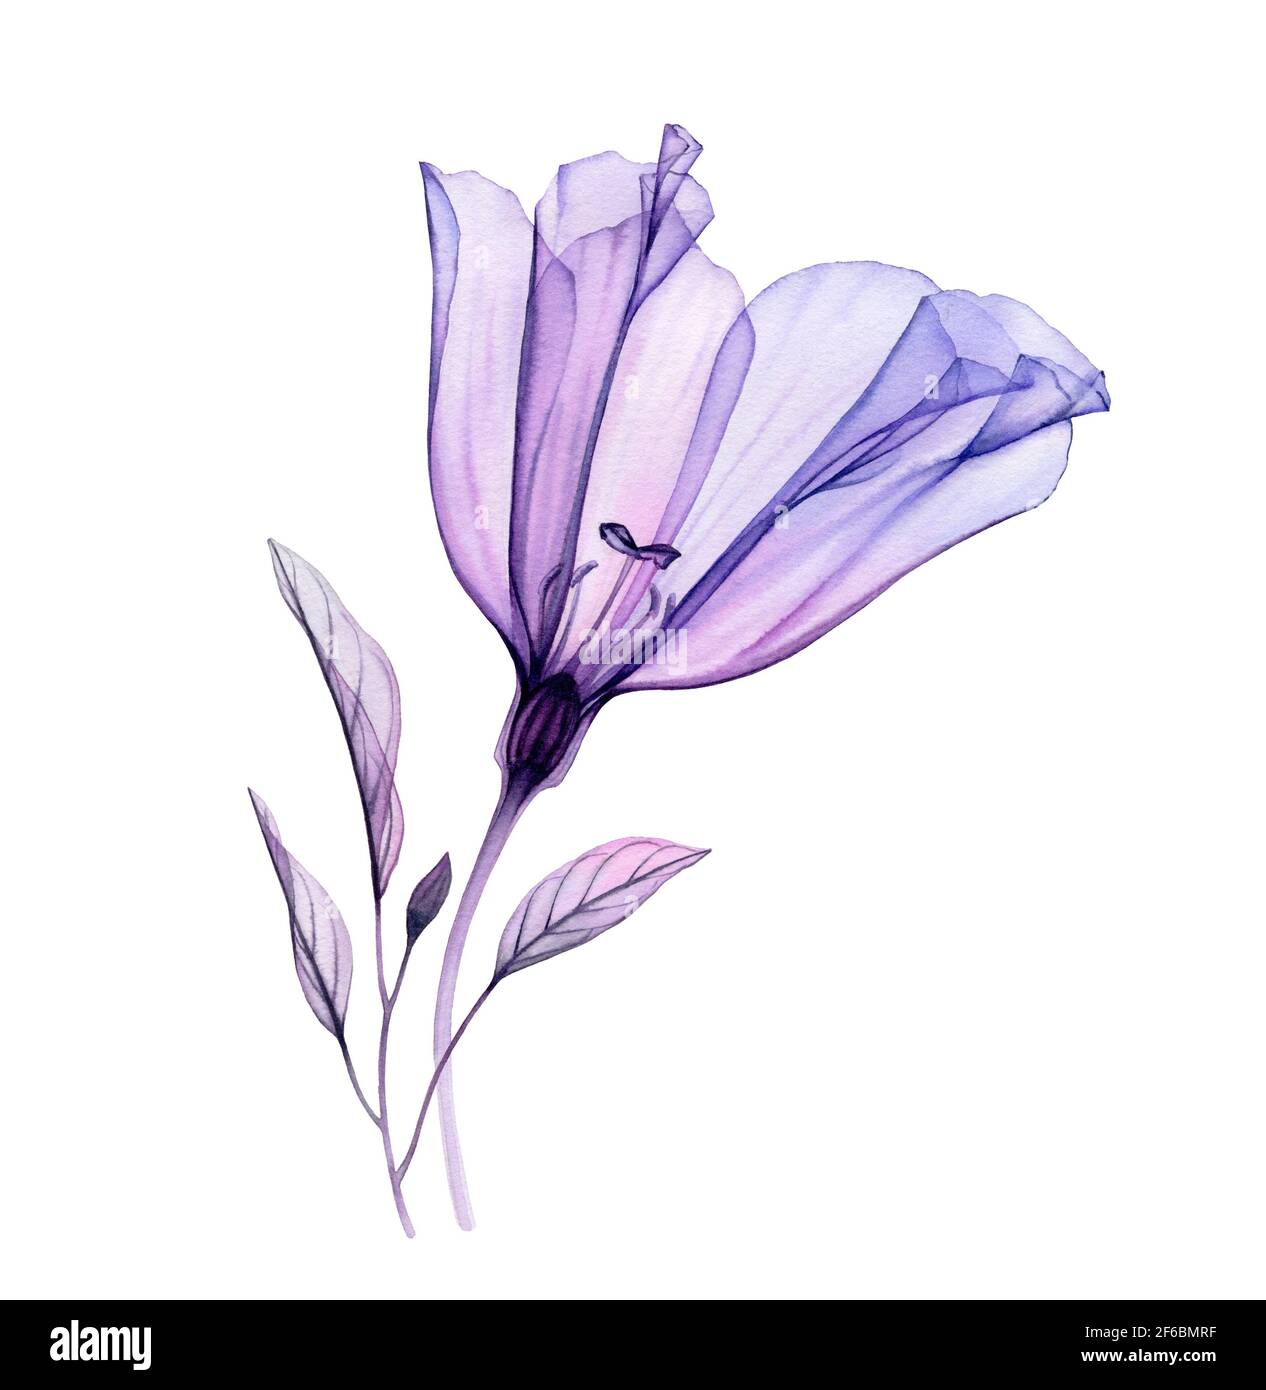 Aquarell-Lisianthus-Bouquet. Handbemaltes Kunstwerk mit durchsichtiger violetter Blume und violetten Blättern, isoliert auf Weiß. Botanische Abbildung für Stockfoto